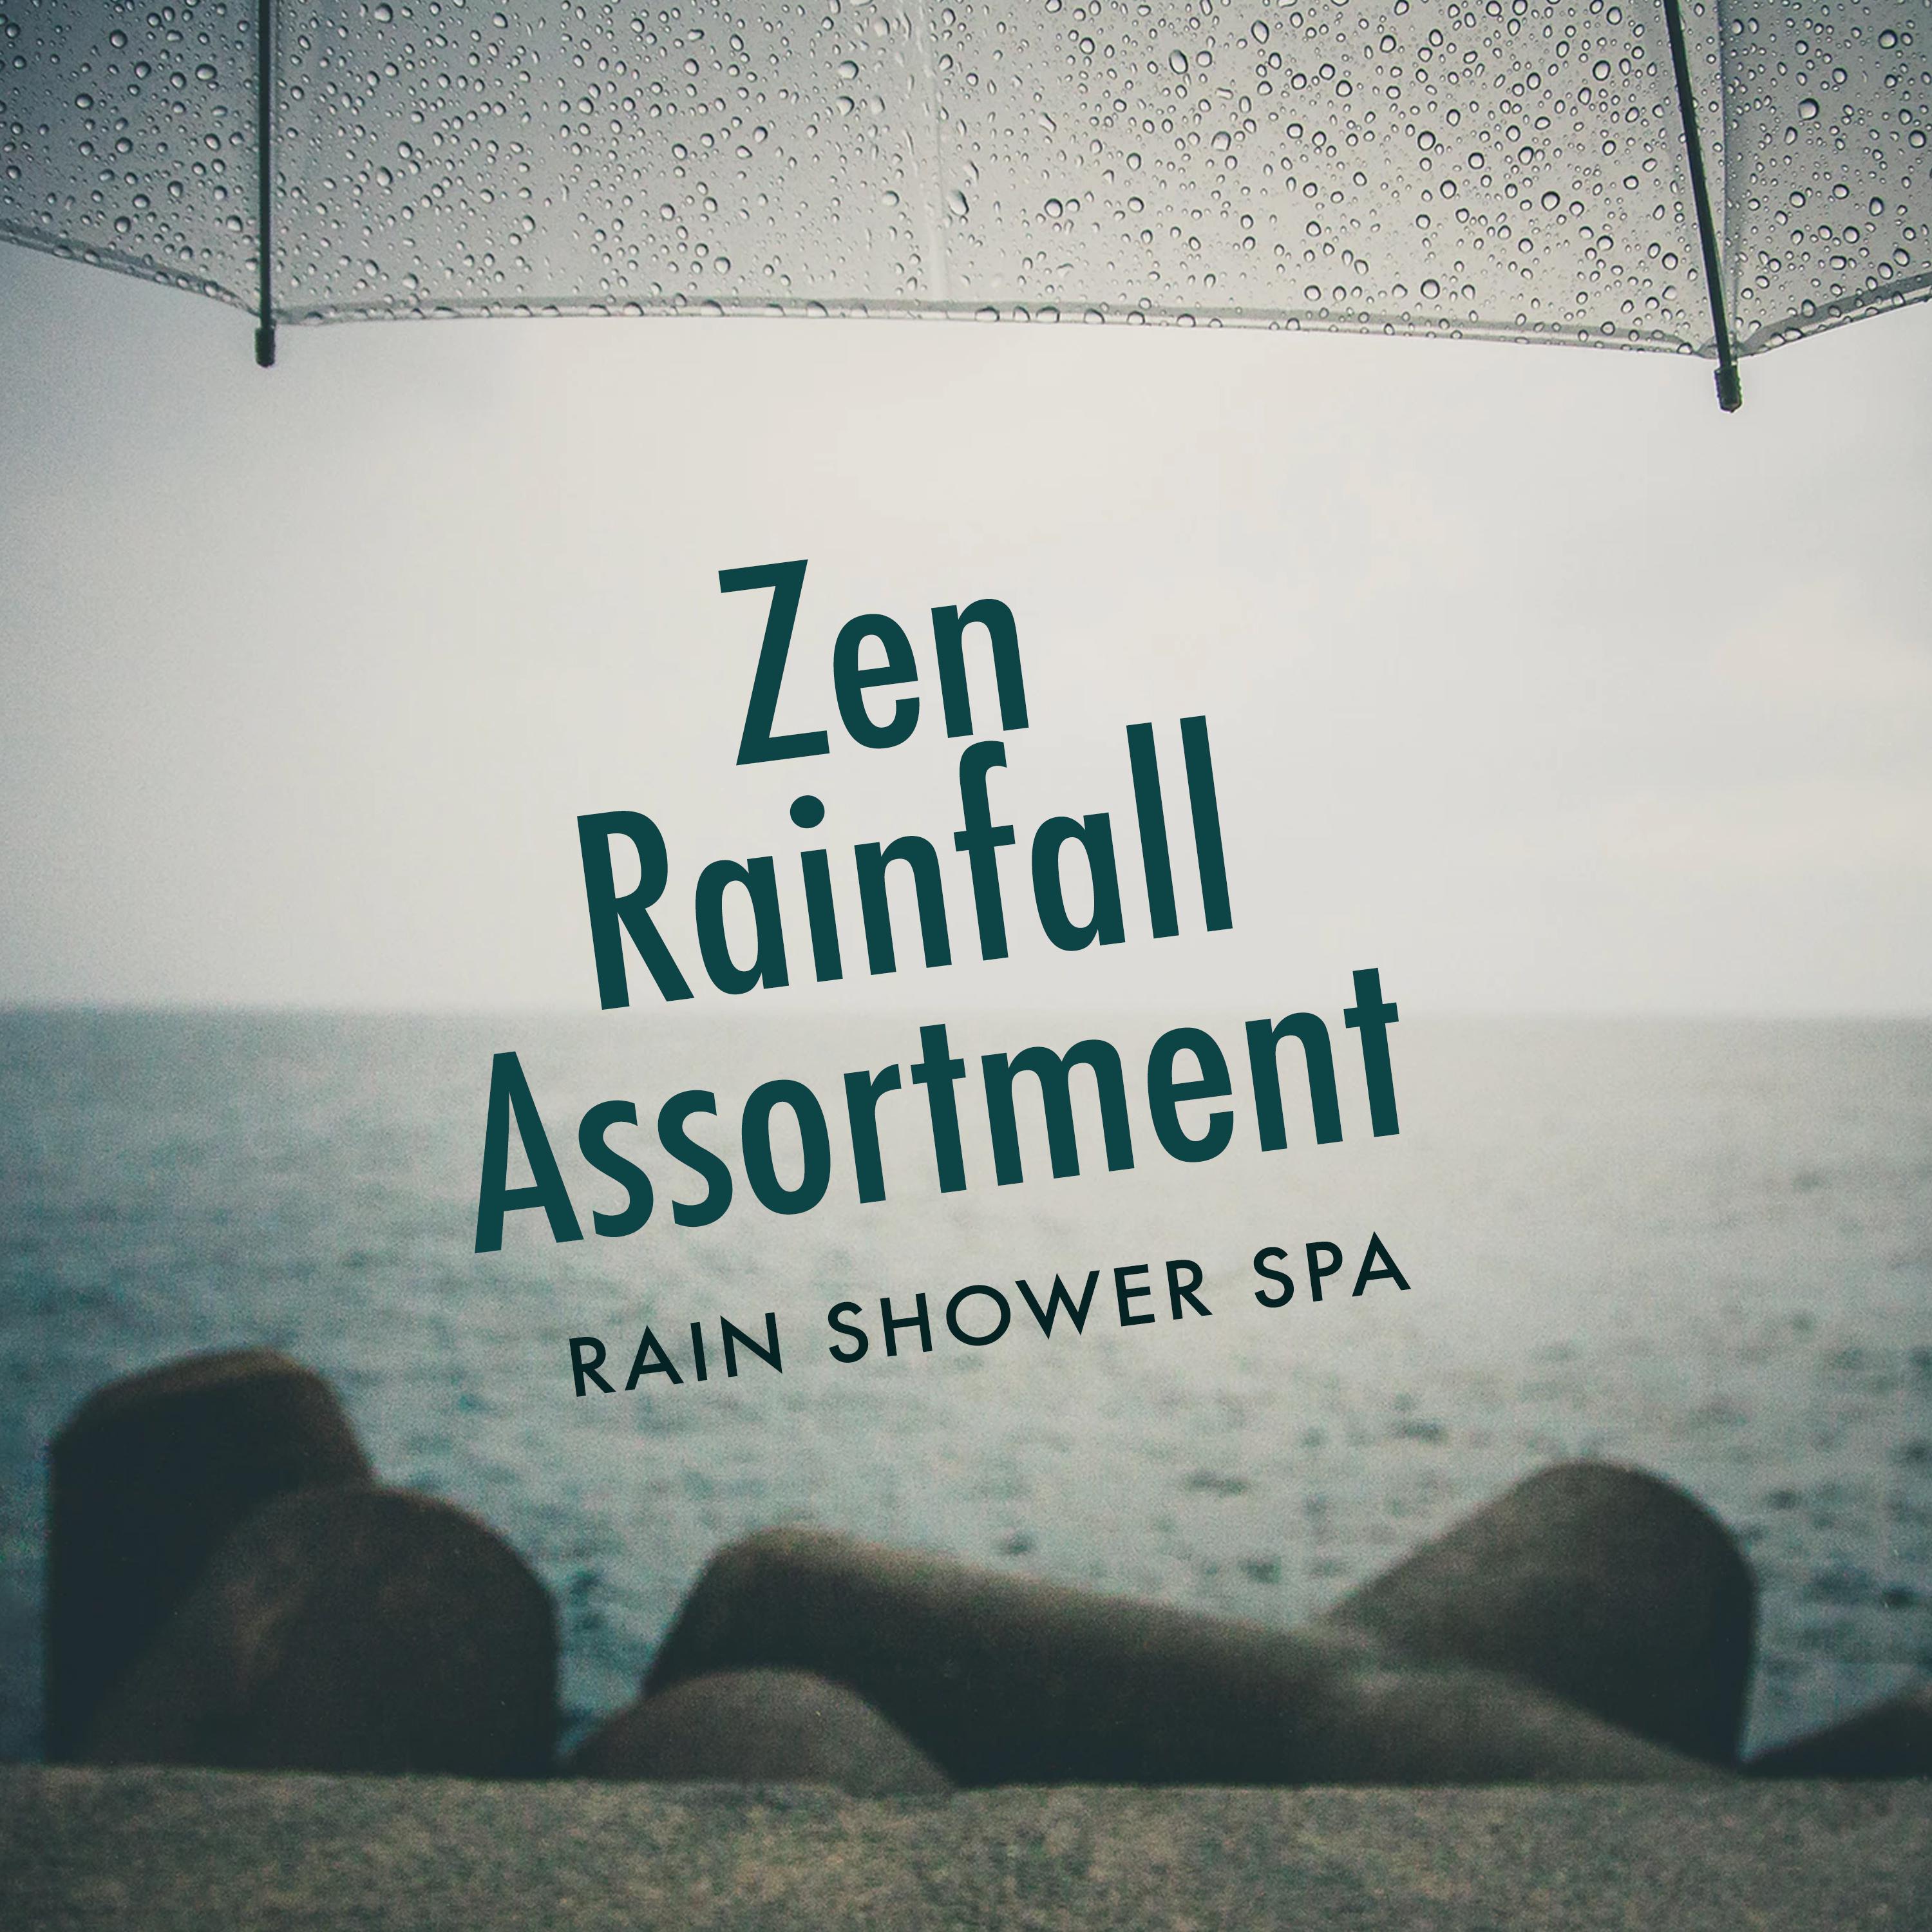 Zen Rainfall Assortment